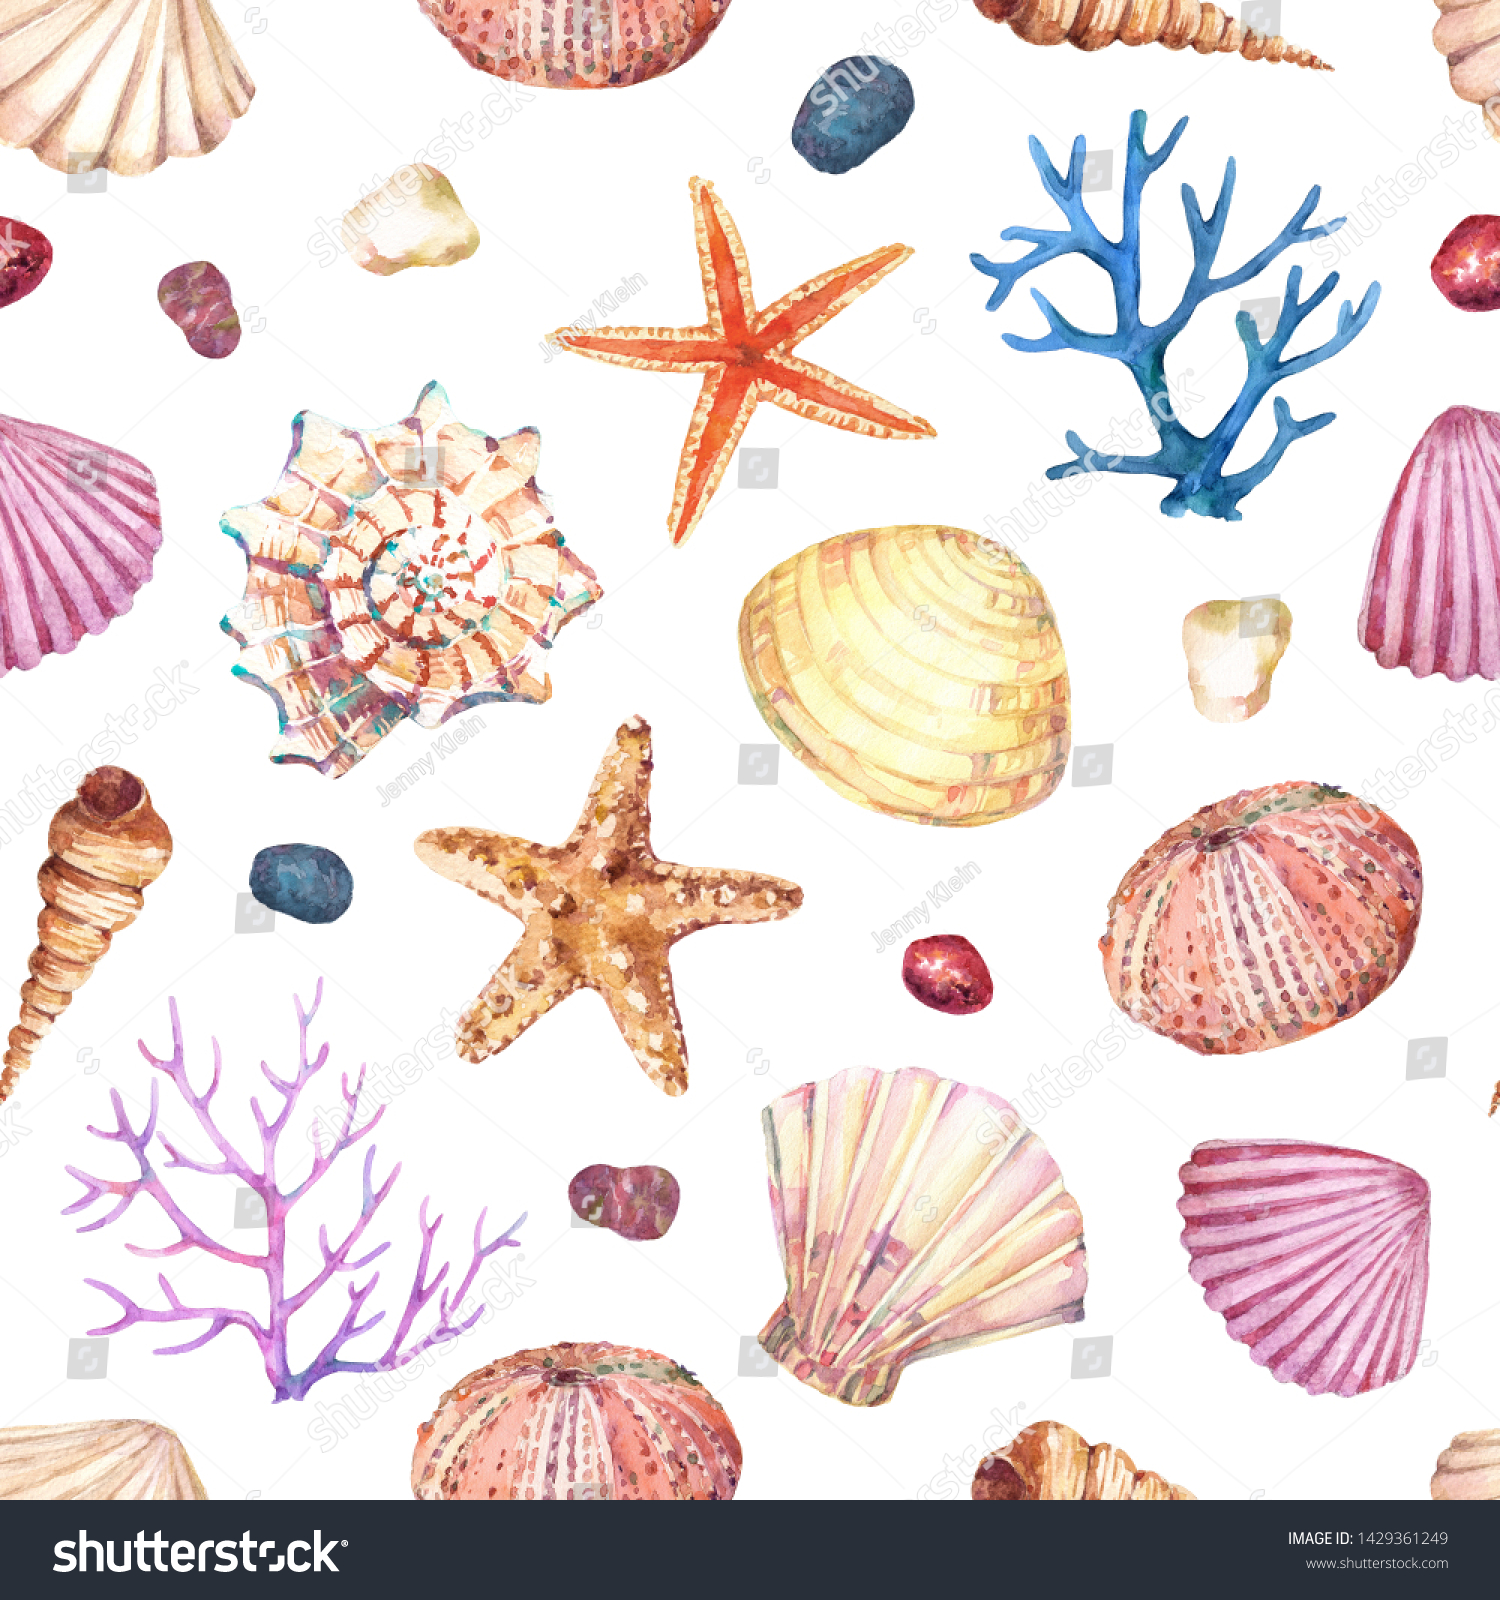 海殻 ヒトデ サンゴ 石 ウニなど 水中の生物とシームレスな水彩柄 のイラスト素材 Shutterstock